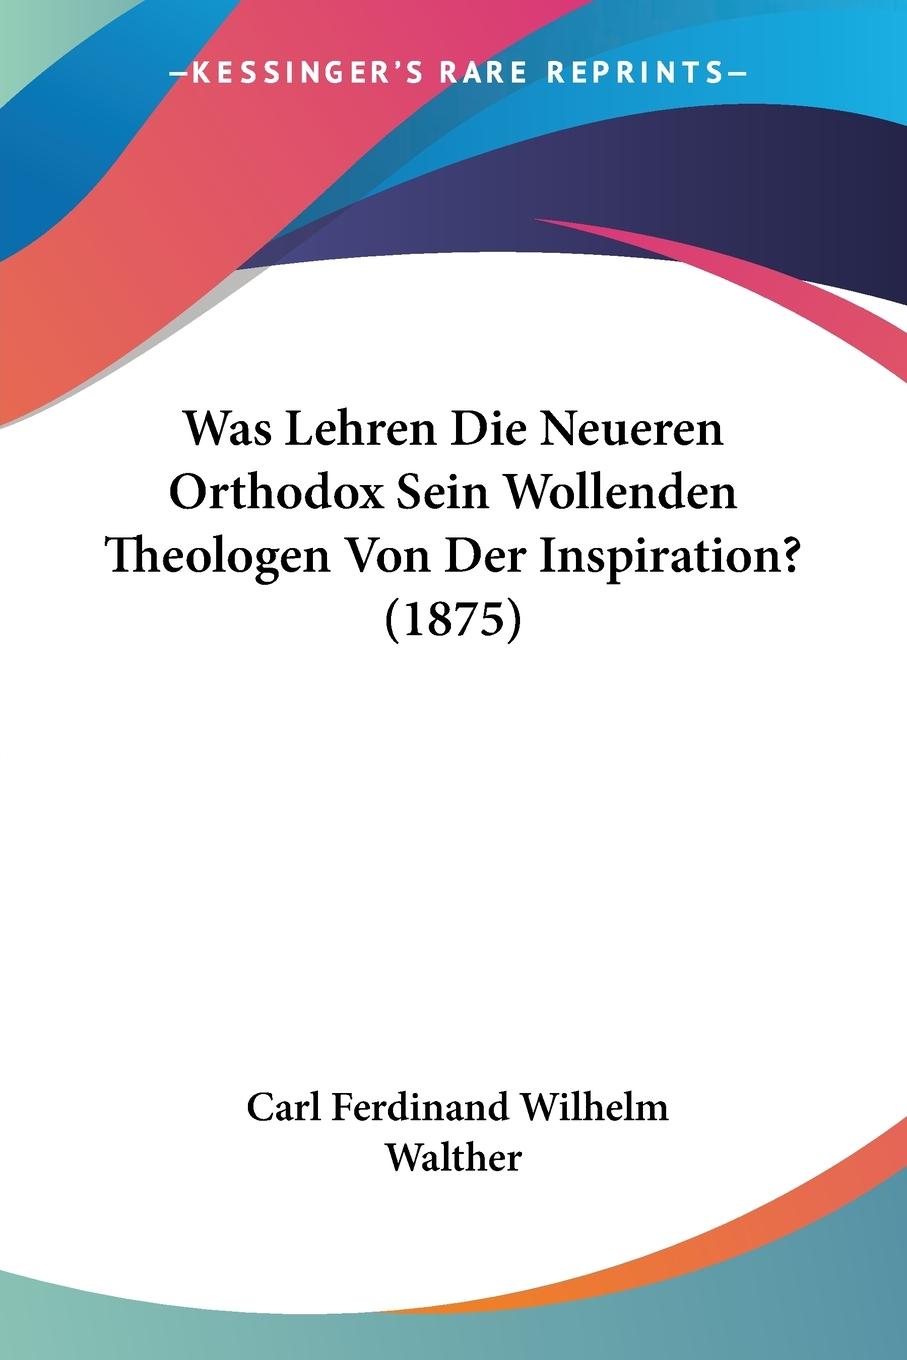 Was Lehren Die Neueren Orthodox Sein Wollenden Theologen Von Der Inspiration? (1875) - Walther, Carl Ferdinand Wilhelm